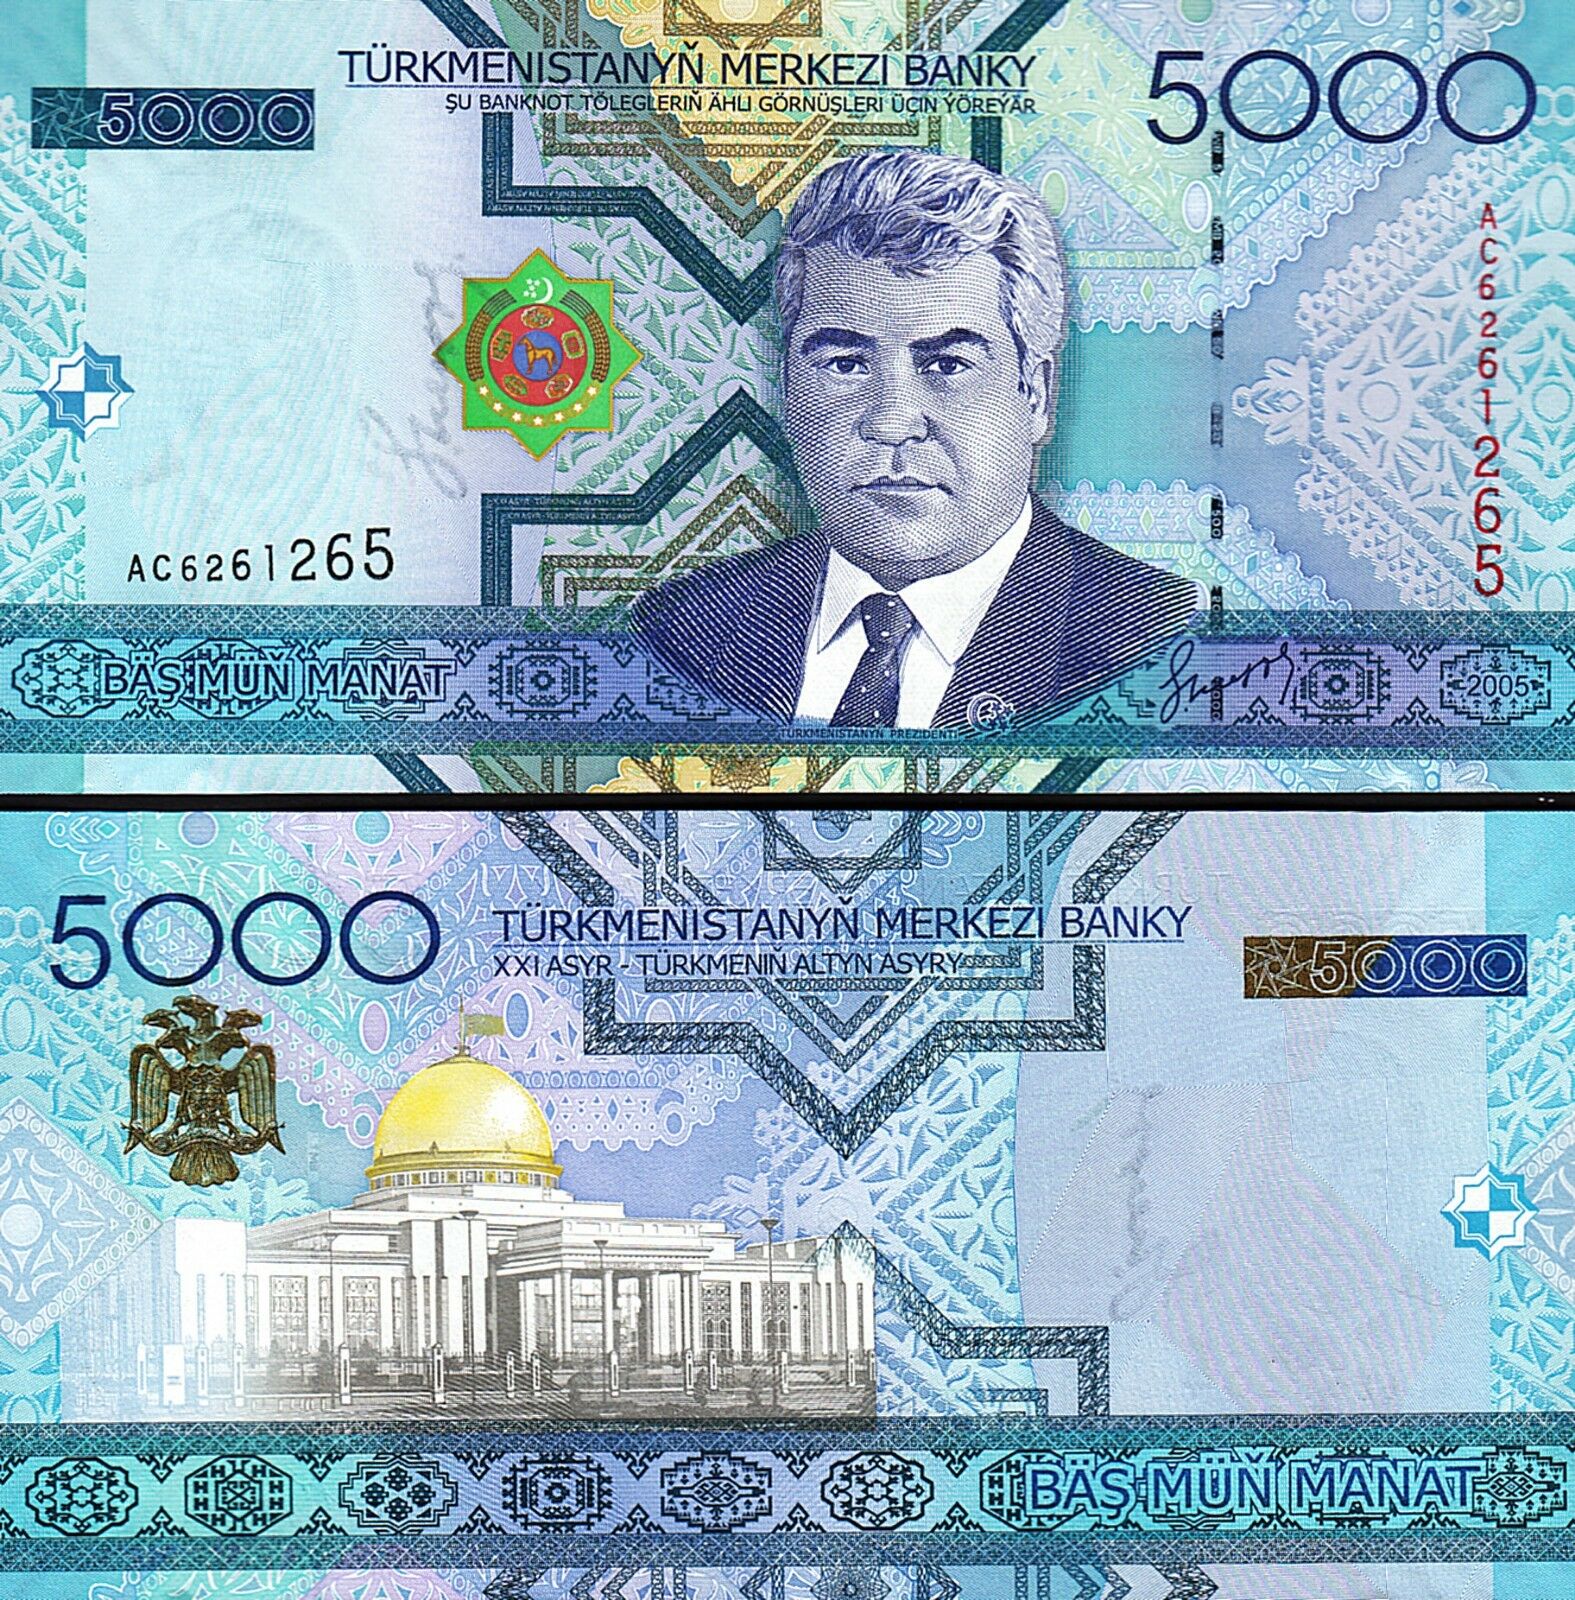 Turkmenistan 5000 Manat 2005 Unc P 21 Fortumor Numismatic Center